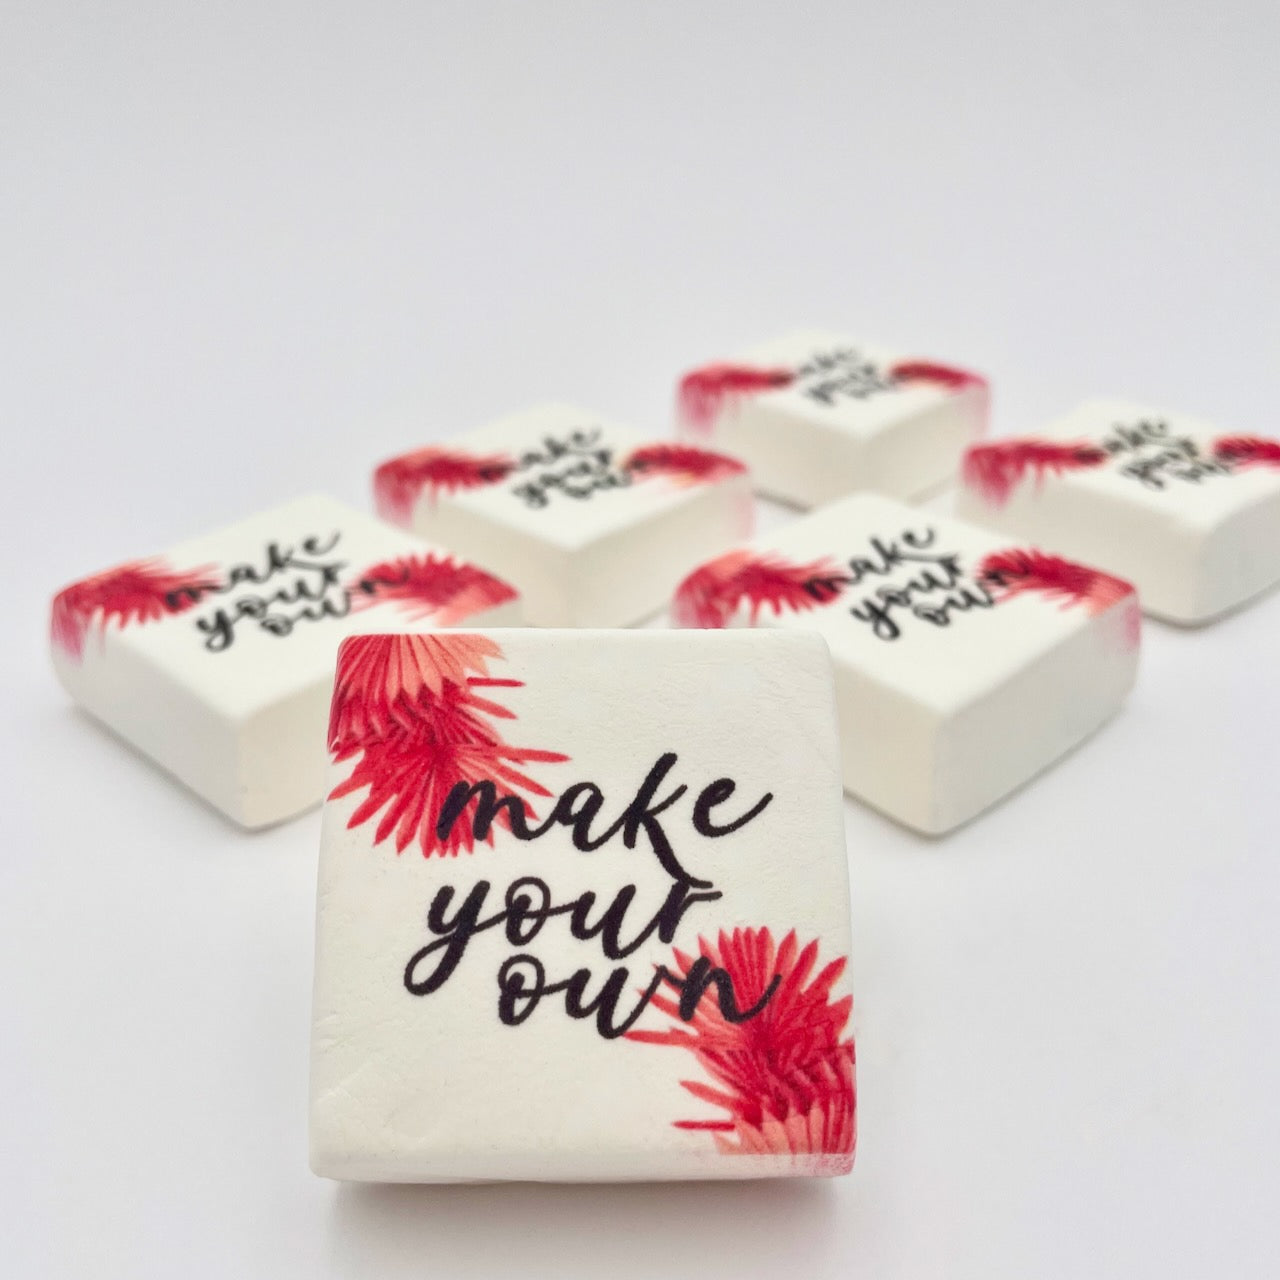 Marshmallow marshmellow personalizzati stampati scritta frase foto logo nome immagine - Idee regalo eventi